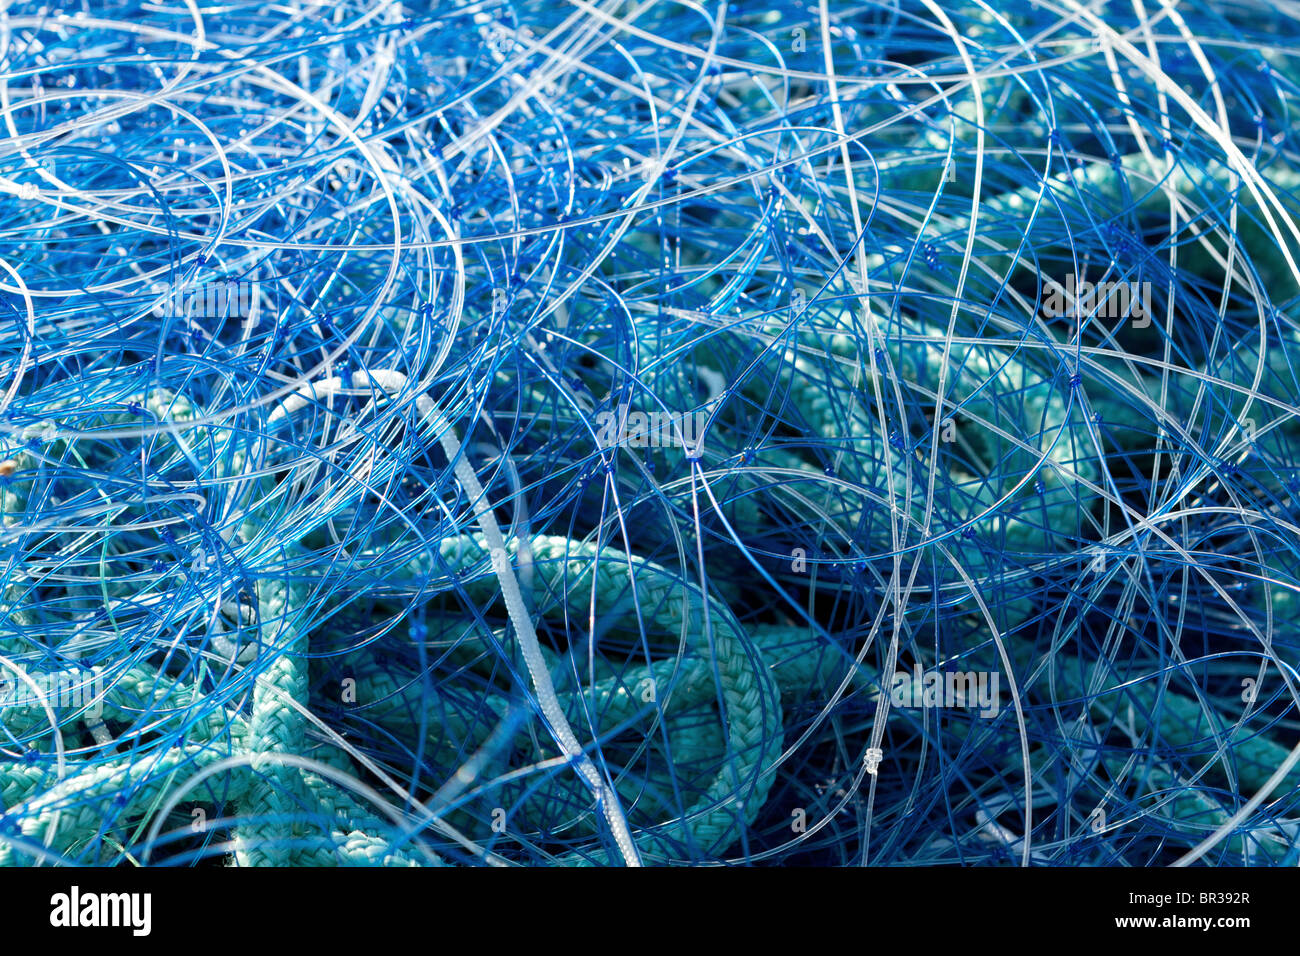 Red de pesca de nylon azul closeup, Bretaña, Francia Foto de stock